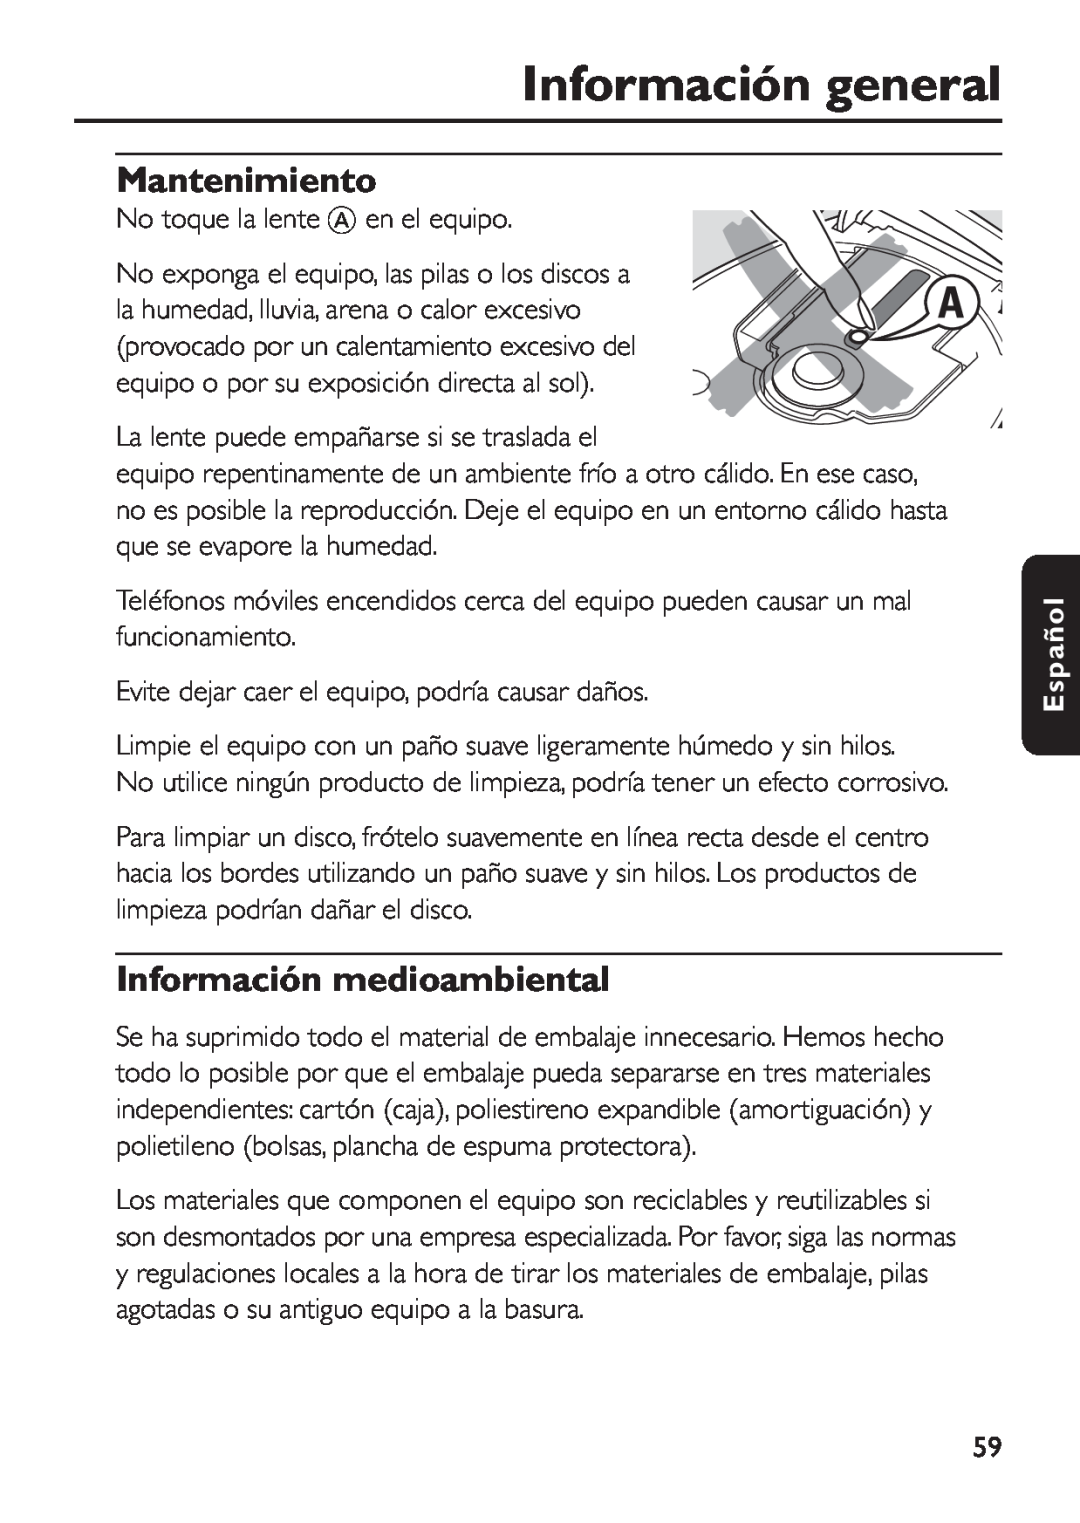 Philips EXP 501/00 manual Información general, Mantenimiento, Información medioambiental, Español 